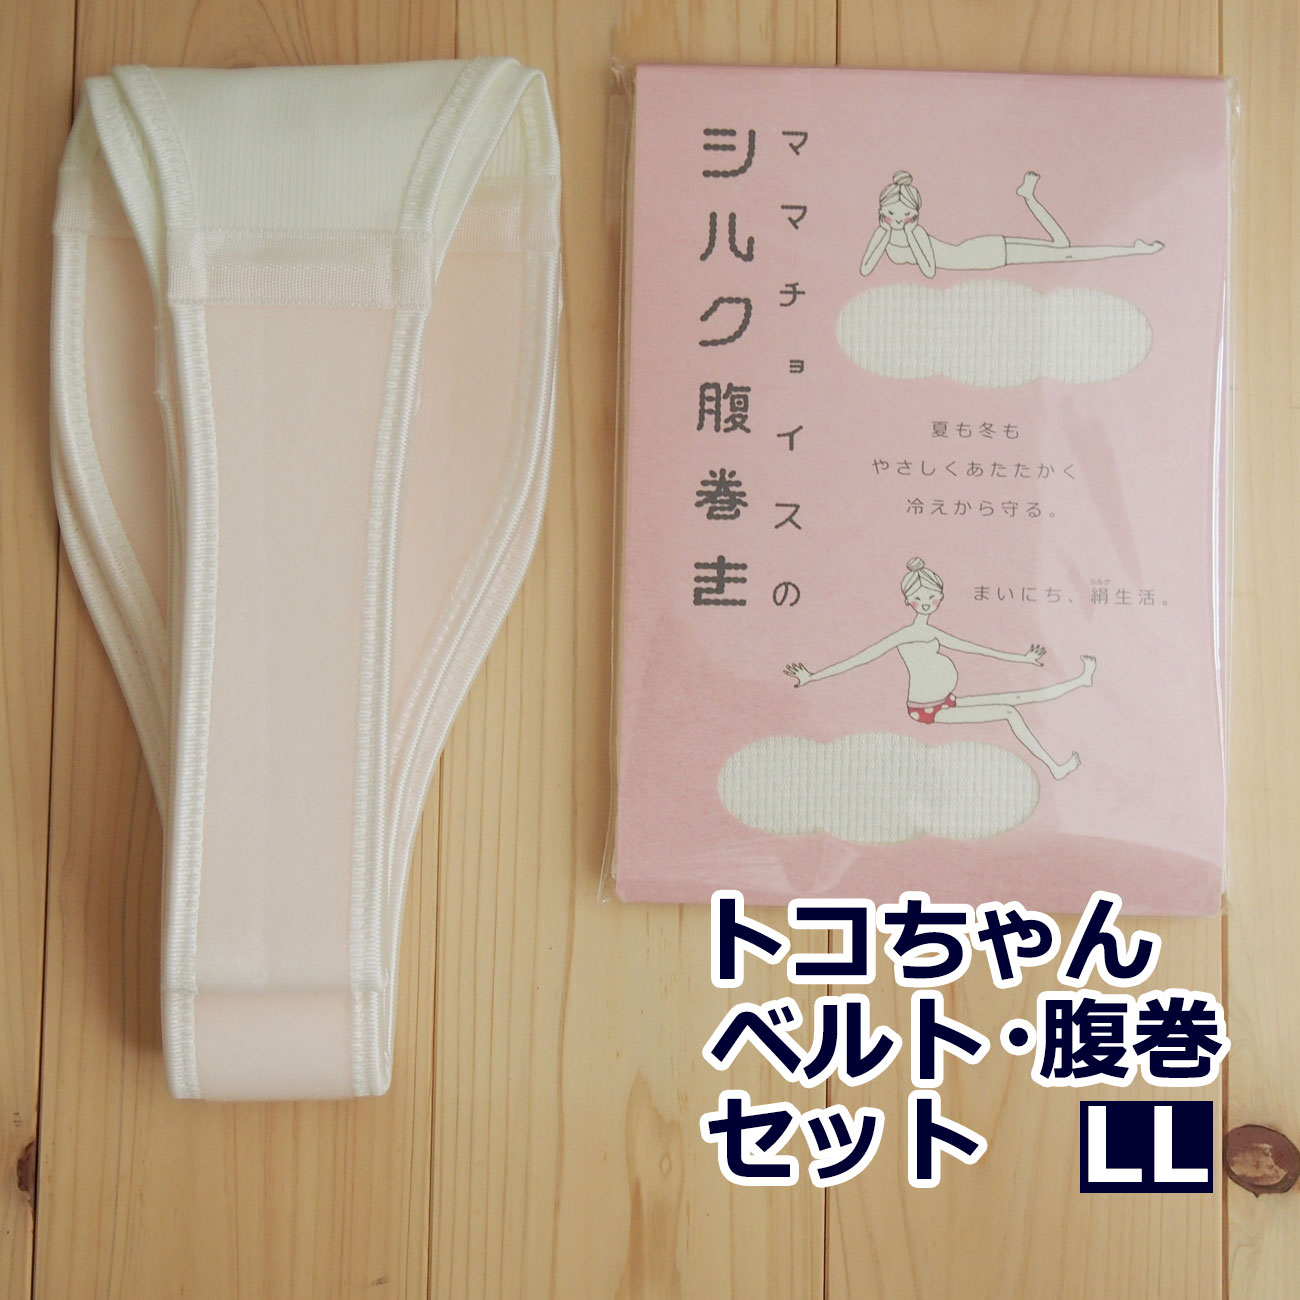 トコちゃんベルト 2 セット LL サイズ 腹巻 シルク腹巻き ふわっと腹巻 産後 腹帯 妊婦帯 日本製 腰痛ベルト